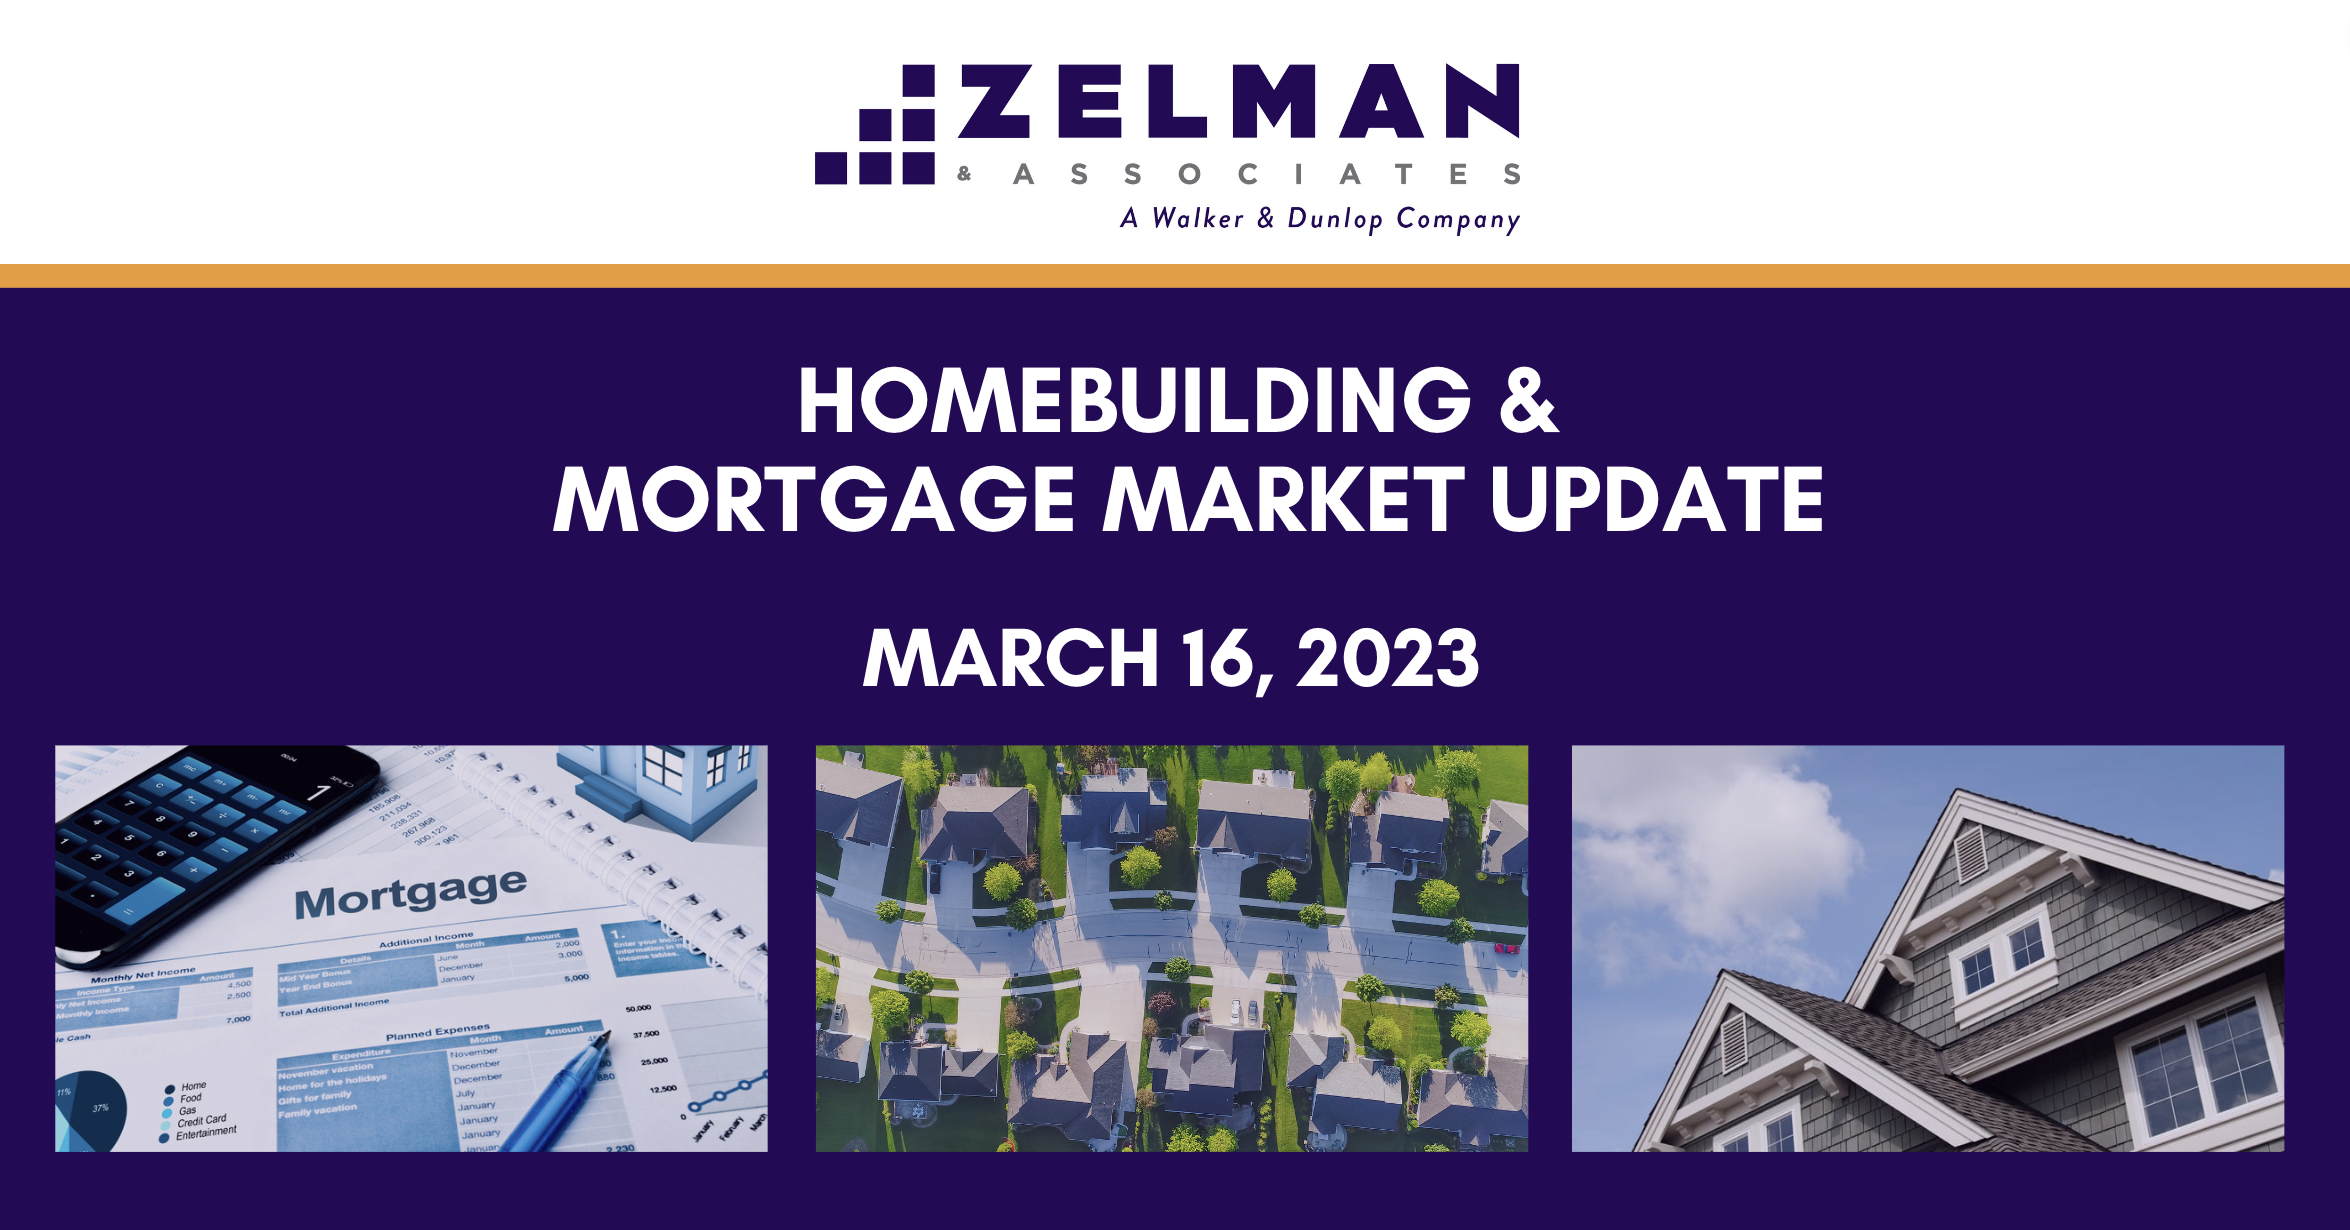 Homebuilding & Mortgage Market Update